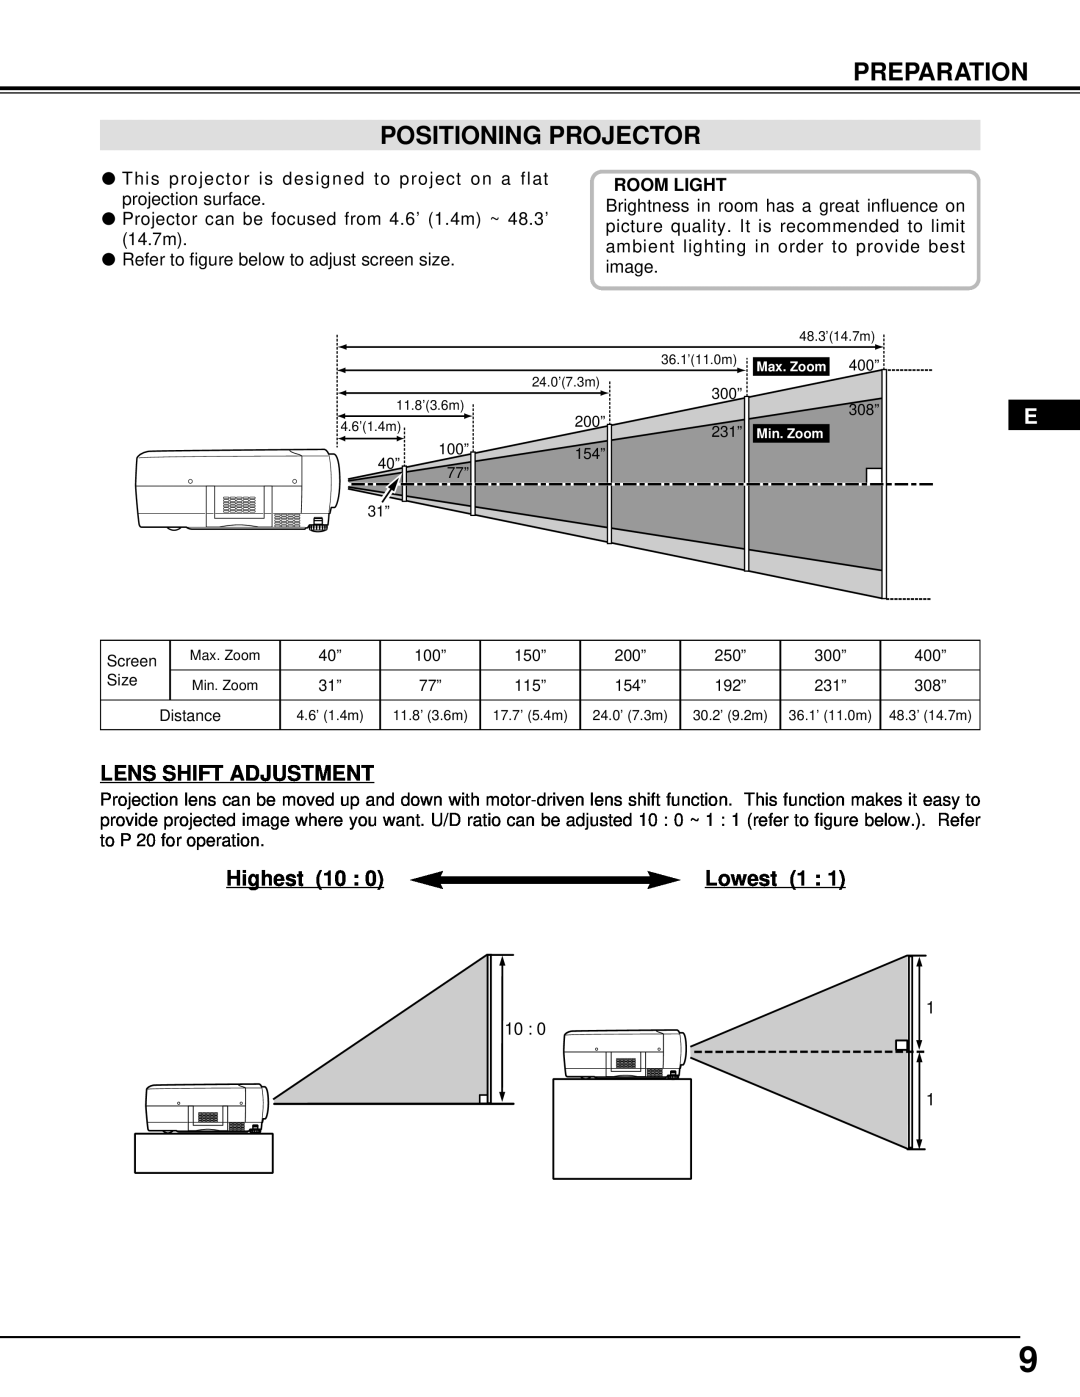 InFocus DP9295 manual Preparation Positioning Projector, Lens Shift Adjustment, Highest 10, Lowest 1 